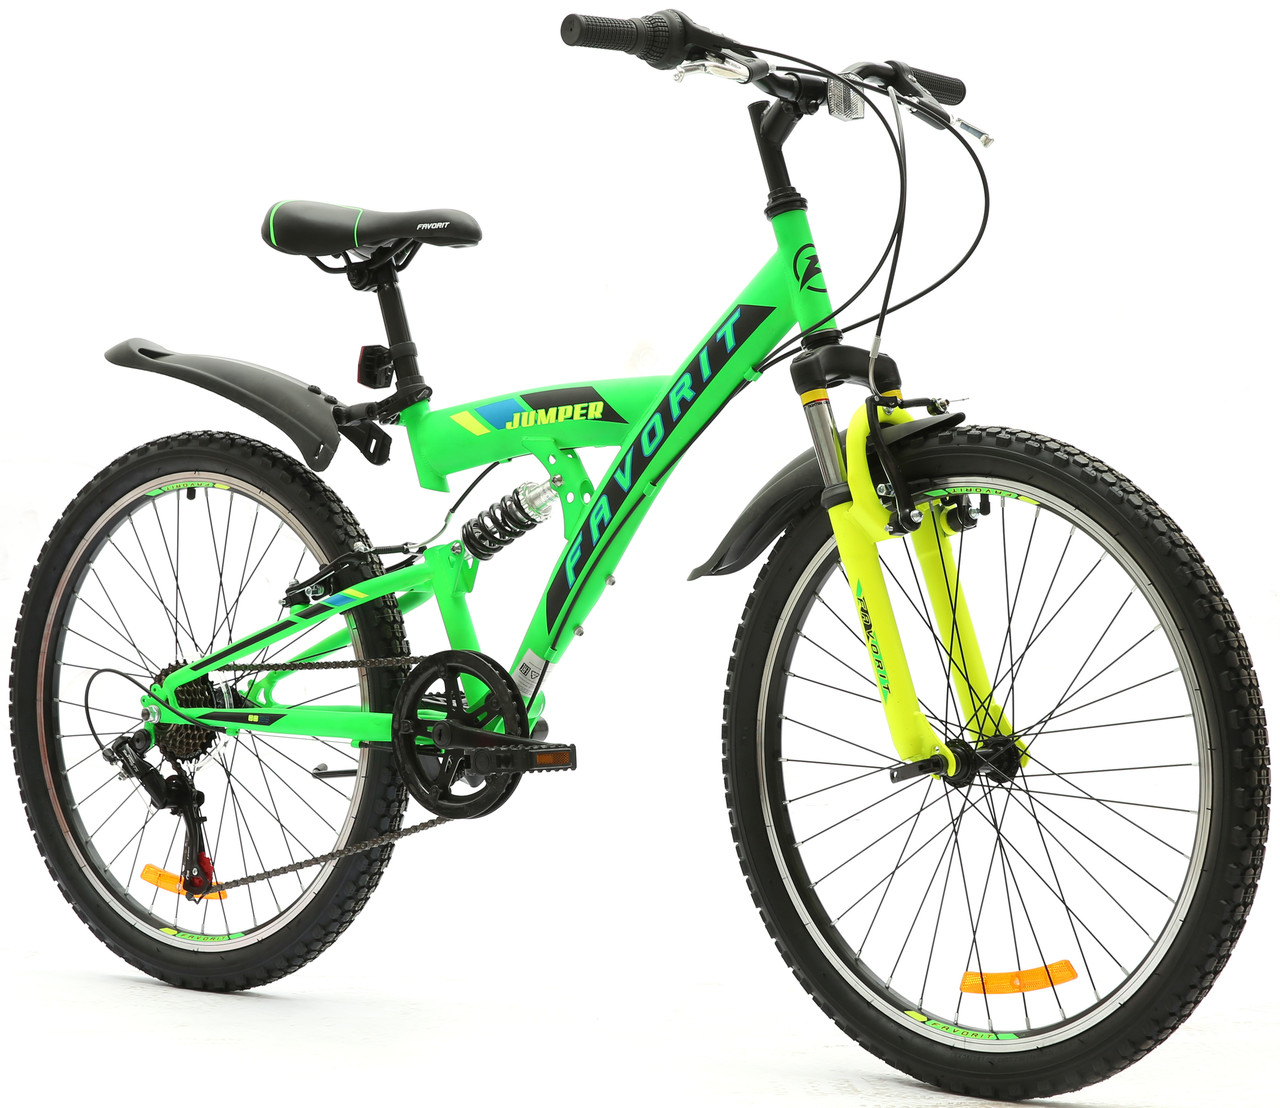 Велосипед Favorit Jumper 24" зеленый